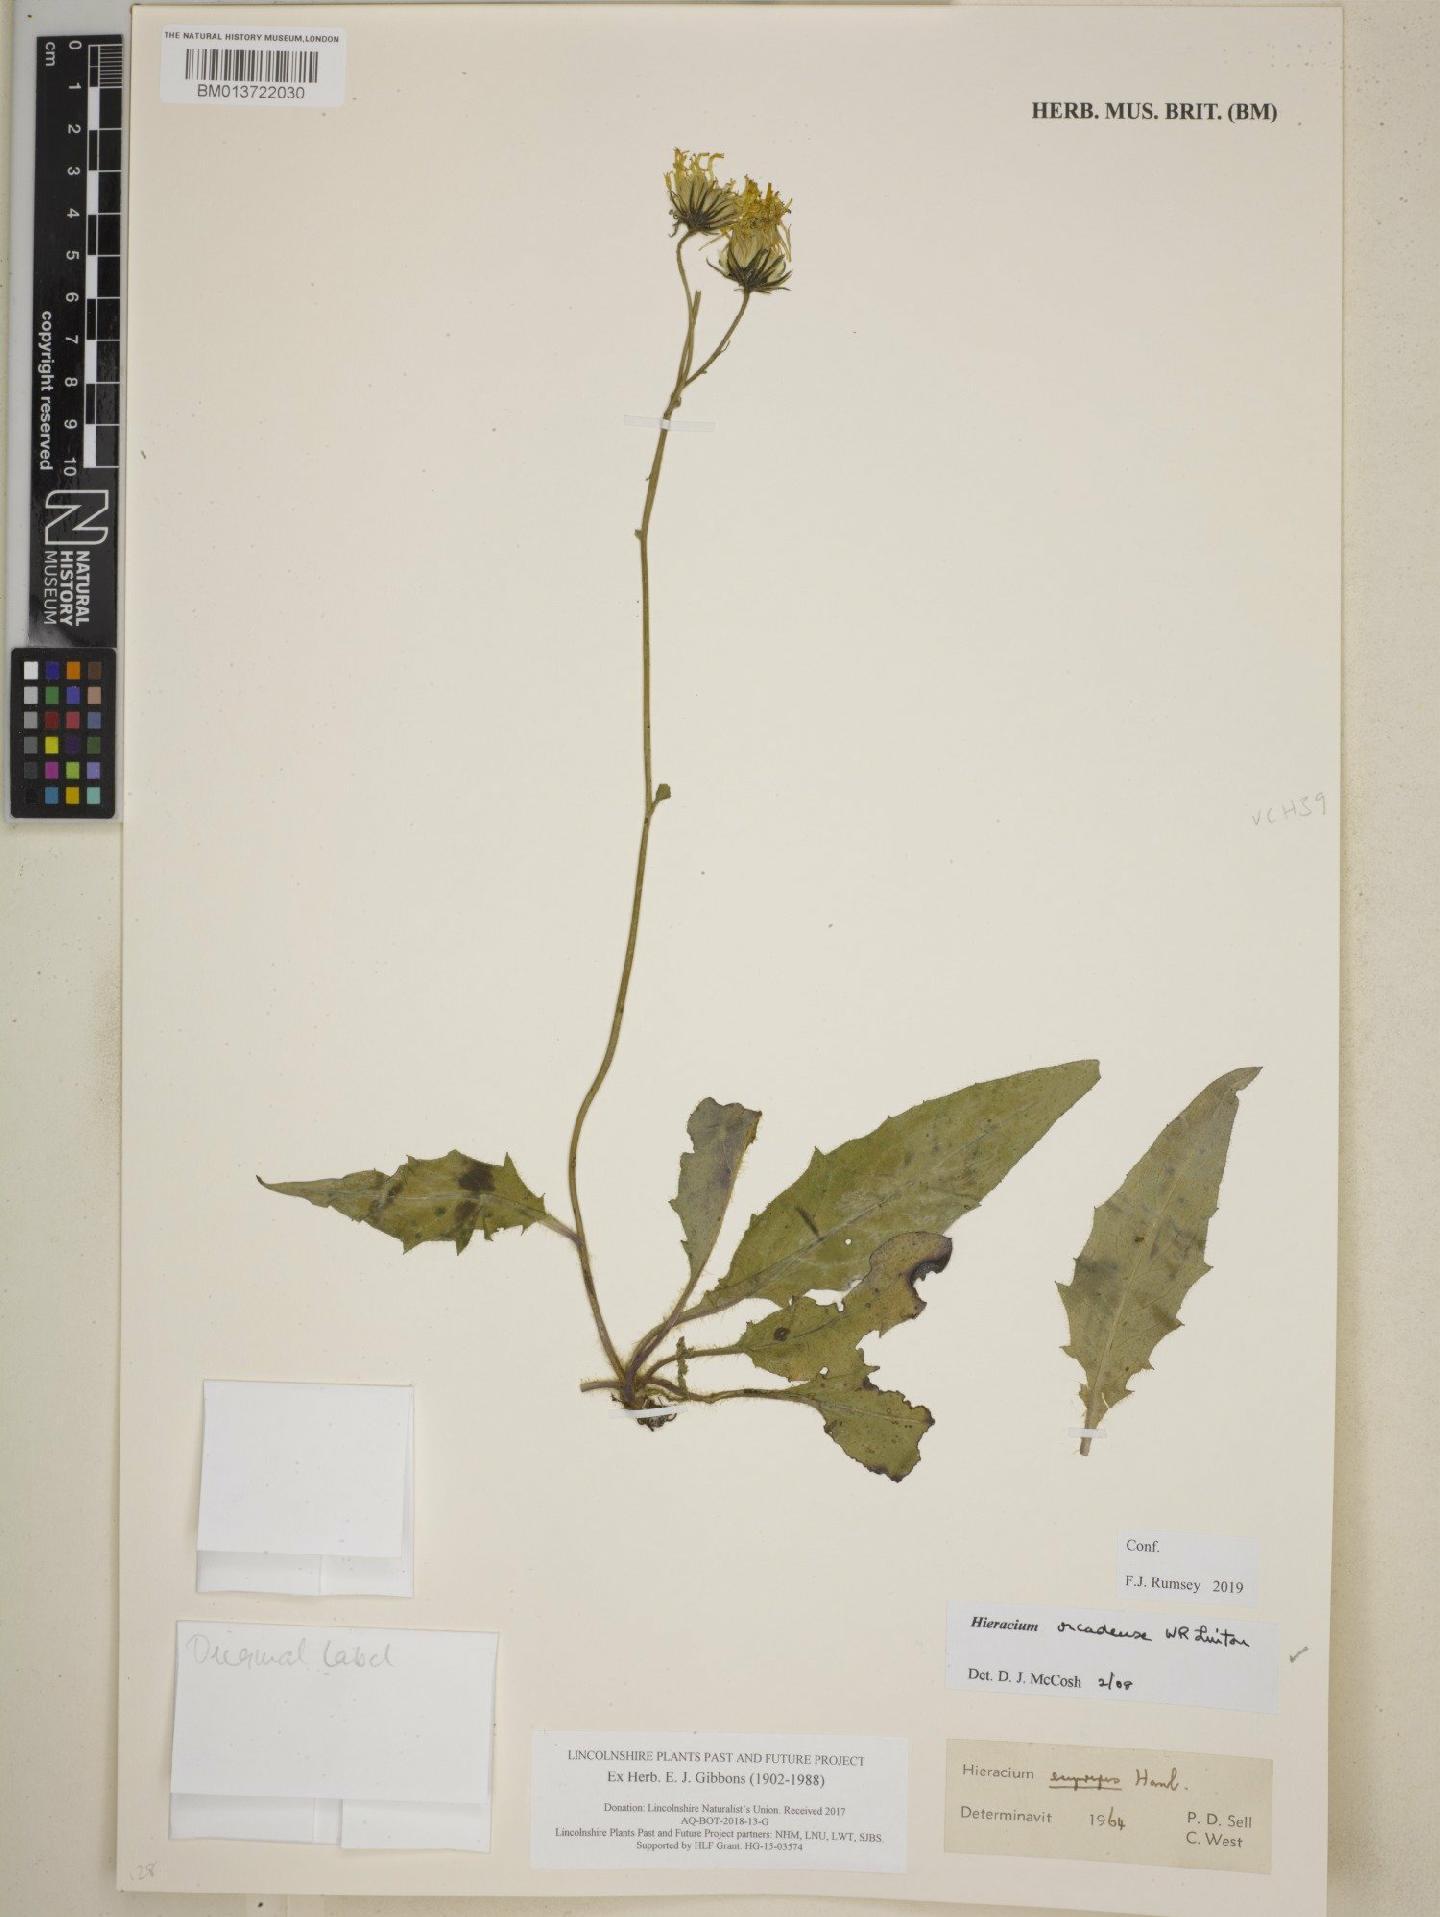 To NHMUK collection (Hieracium orcadense W.R.Linton; NHMUK:ecatalogue:8749549)